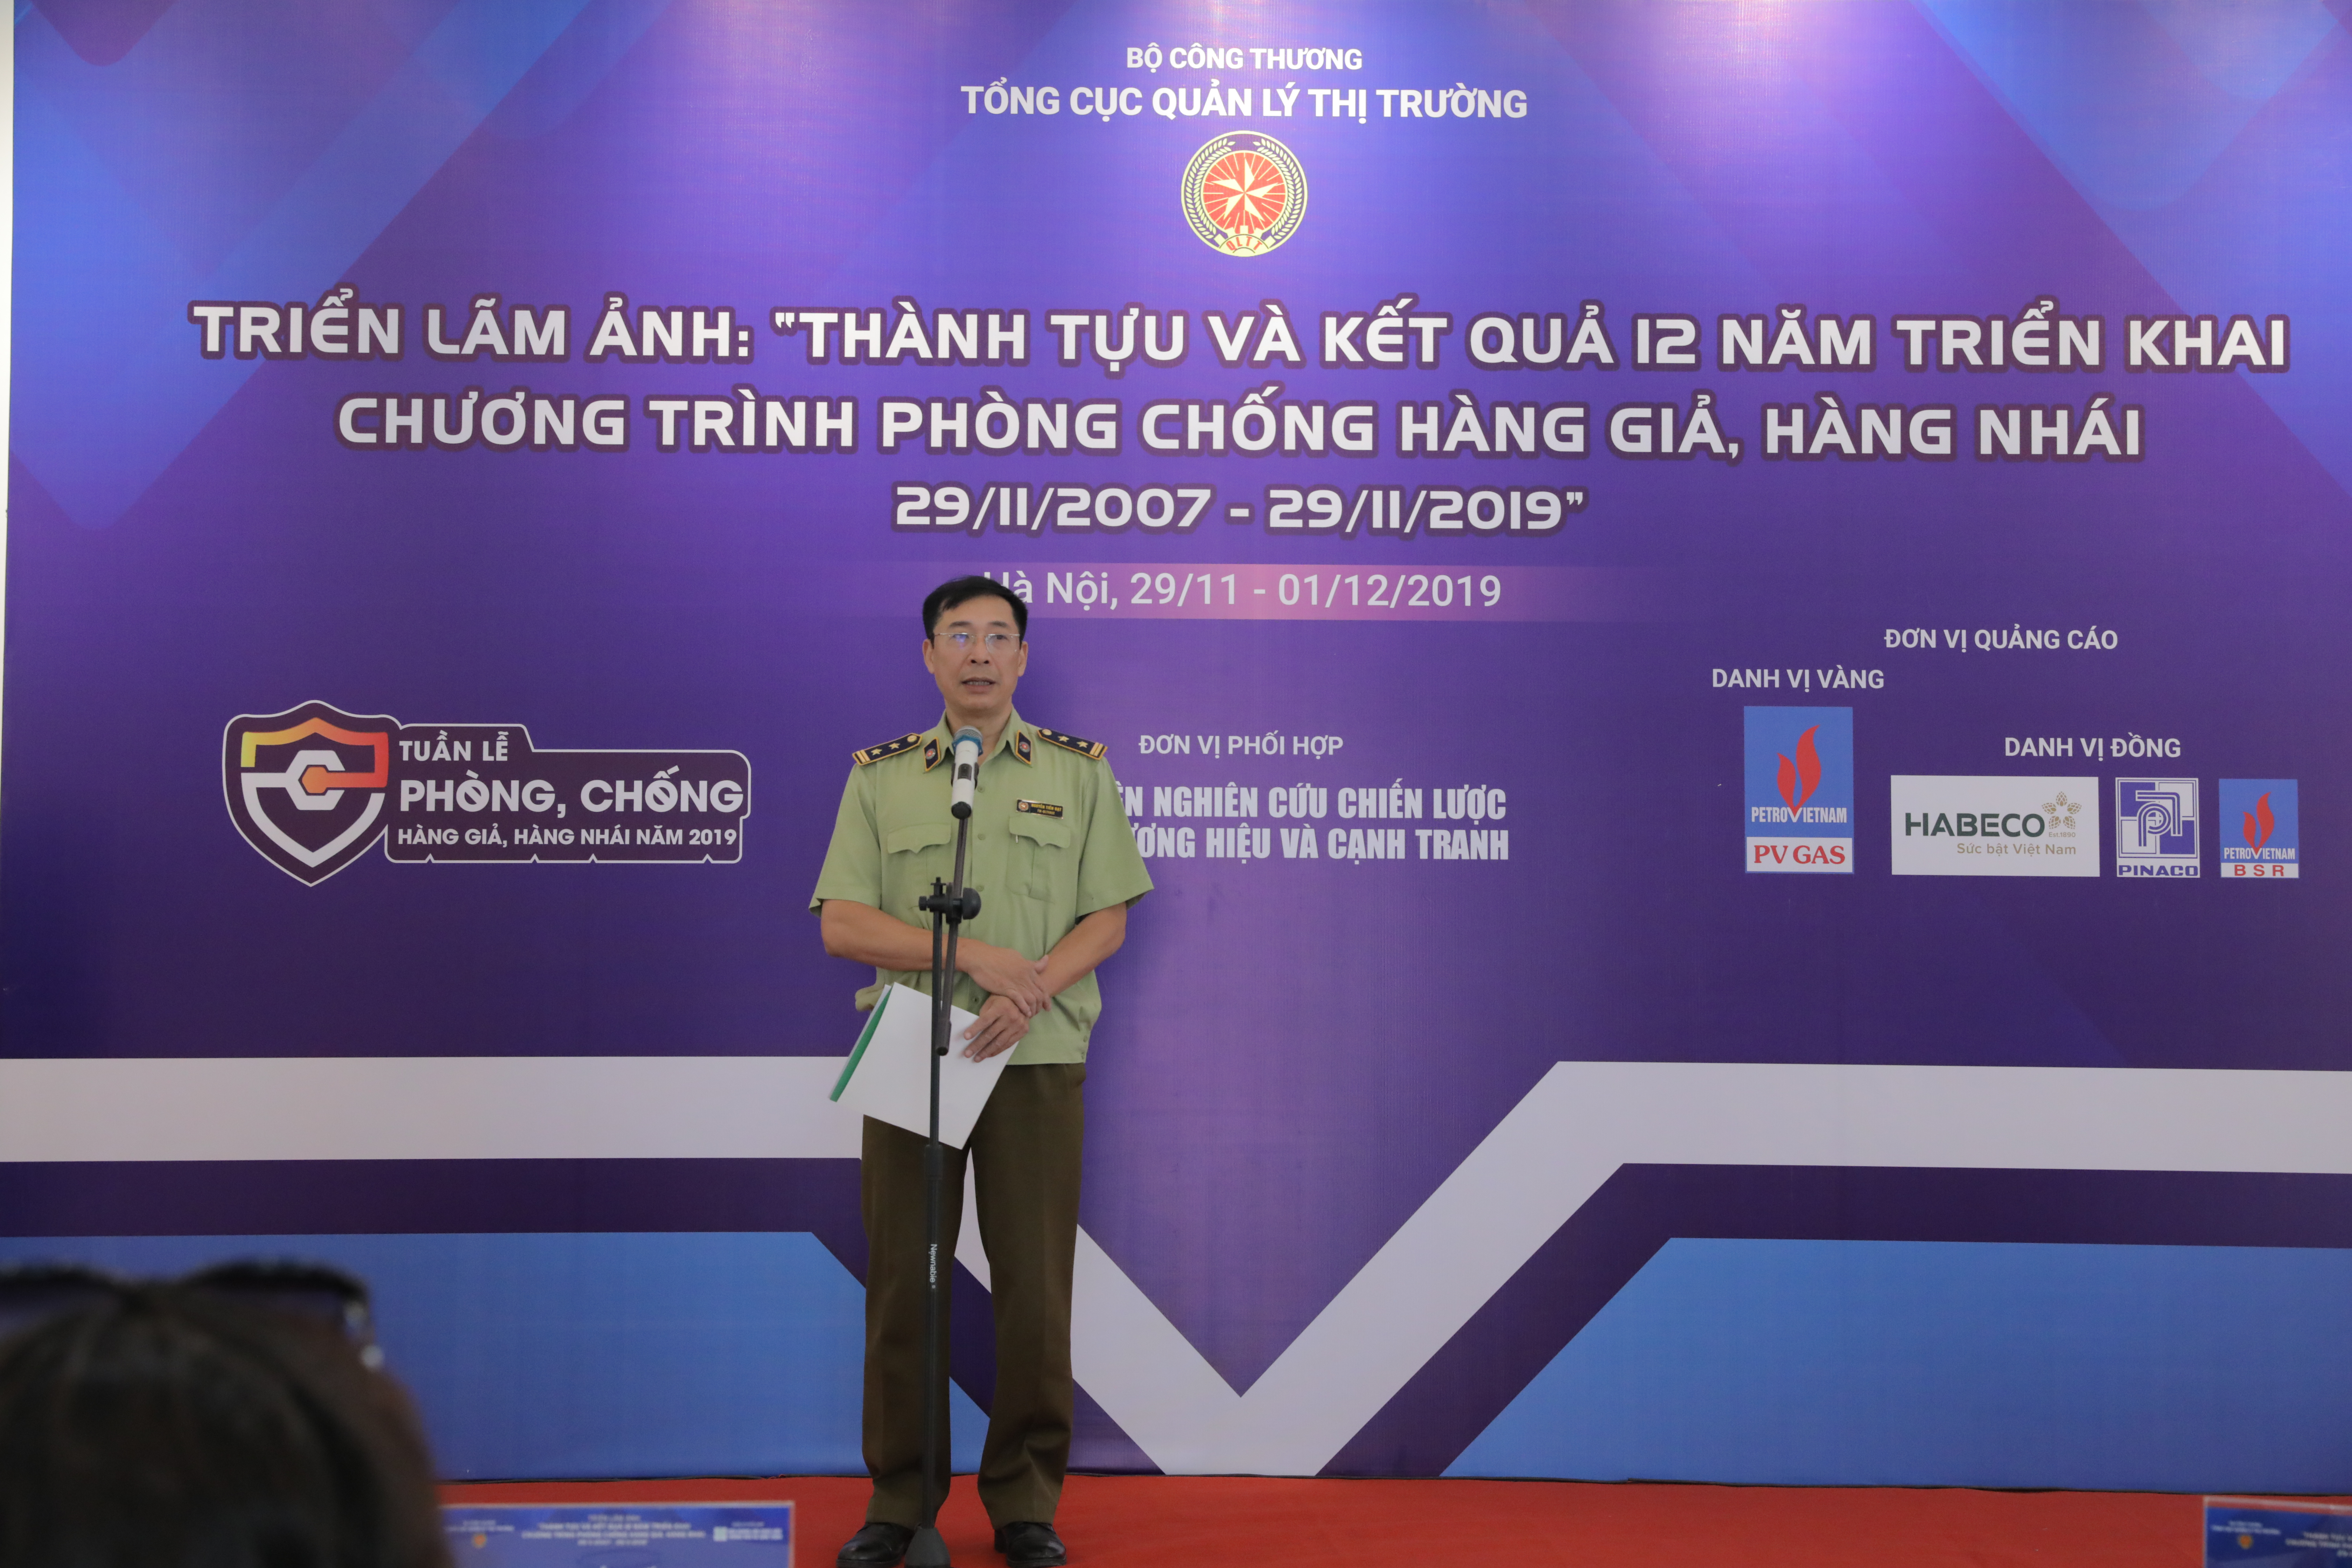 Ông Nguyễn Tiến Đạt - Phó Cục trưởng Cục Nghiệp vụ (Tổng cục Quản lý thị trường) phát biểu tại Triển lãm